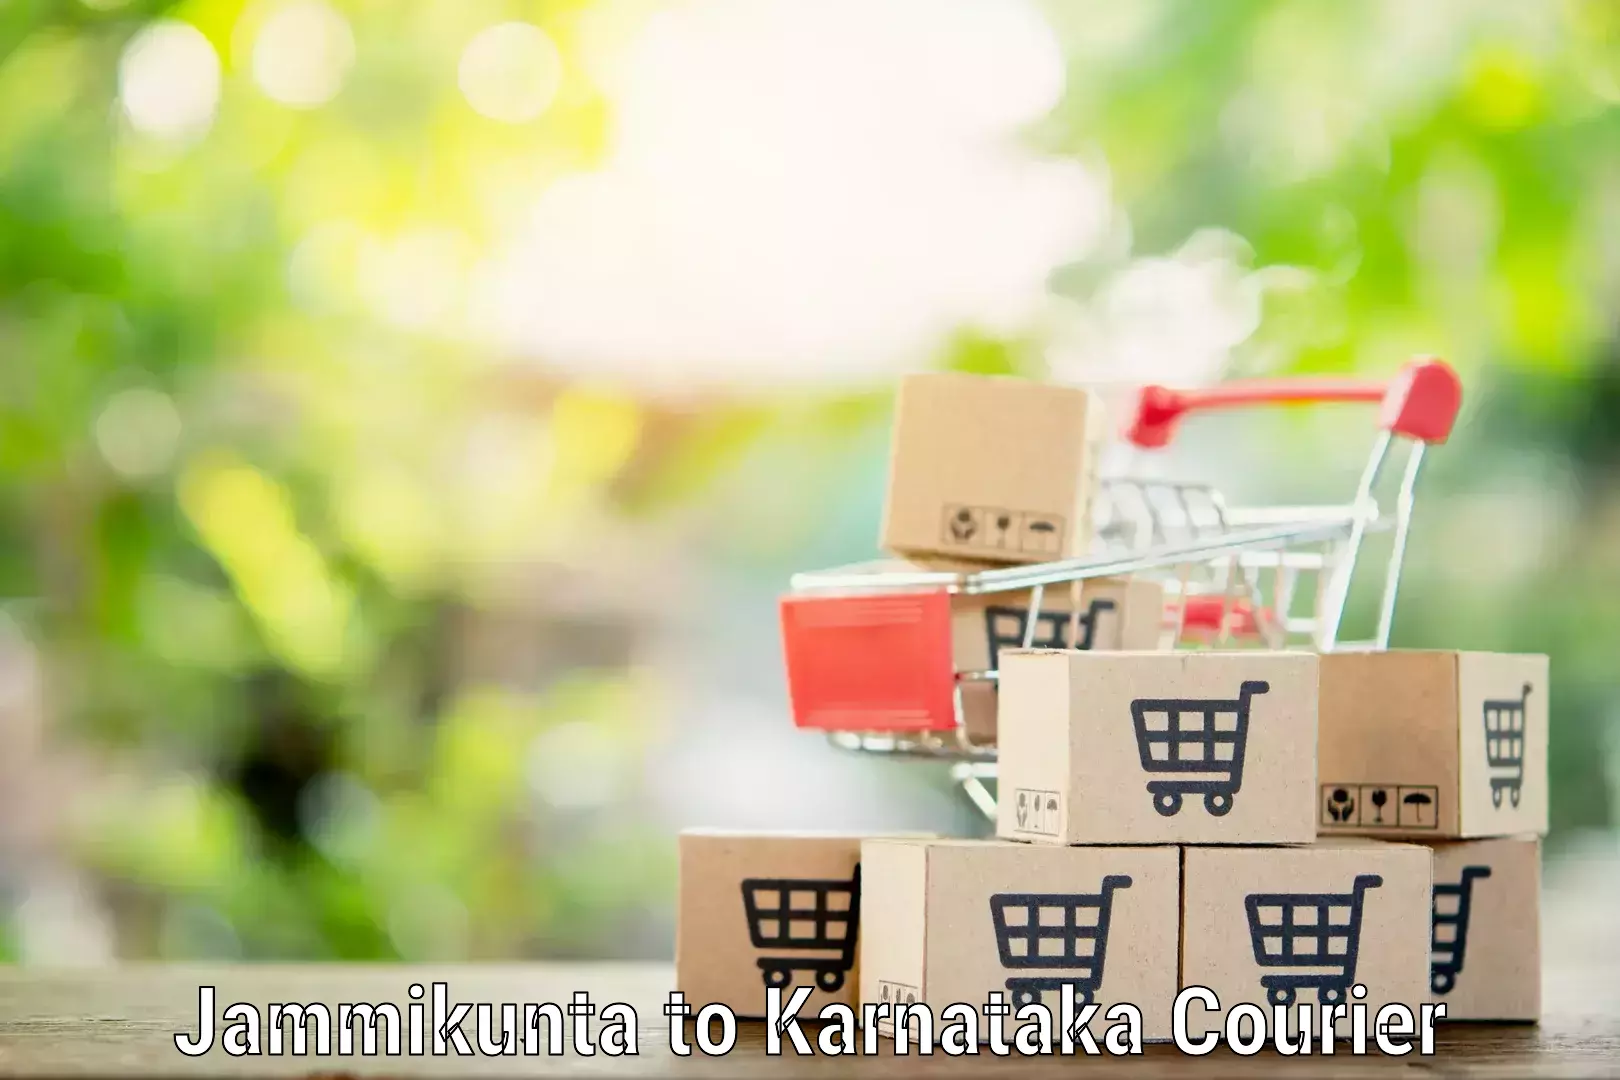 Residential moving experts Jammikunta to Karnataka